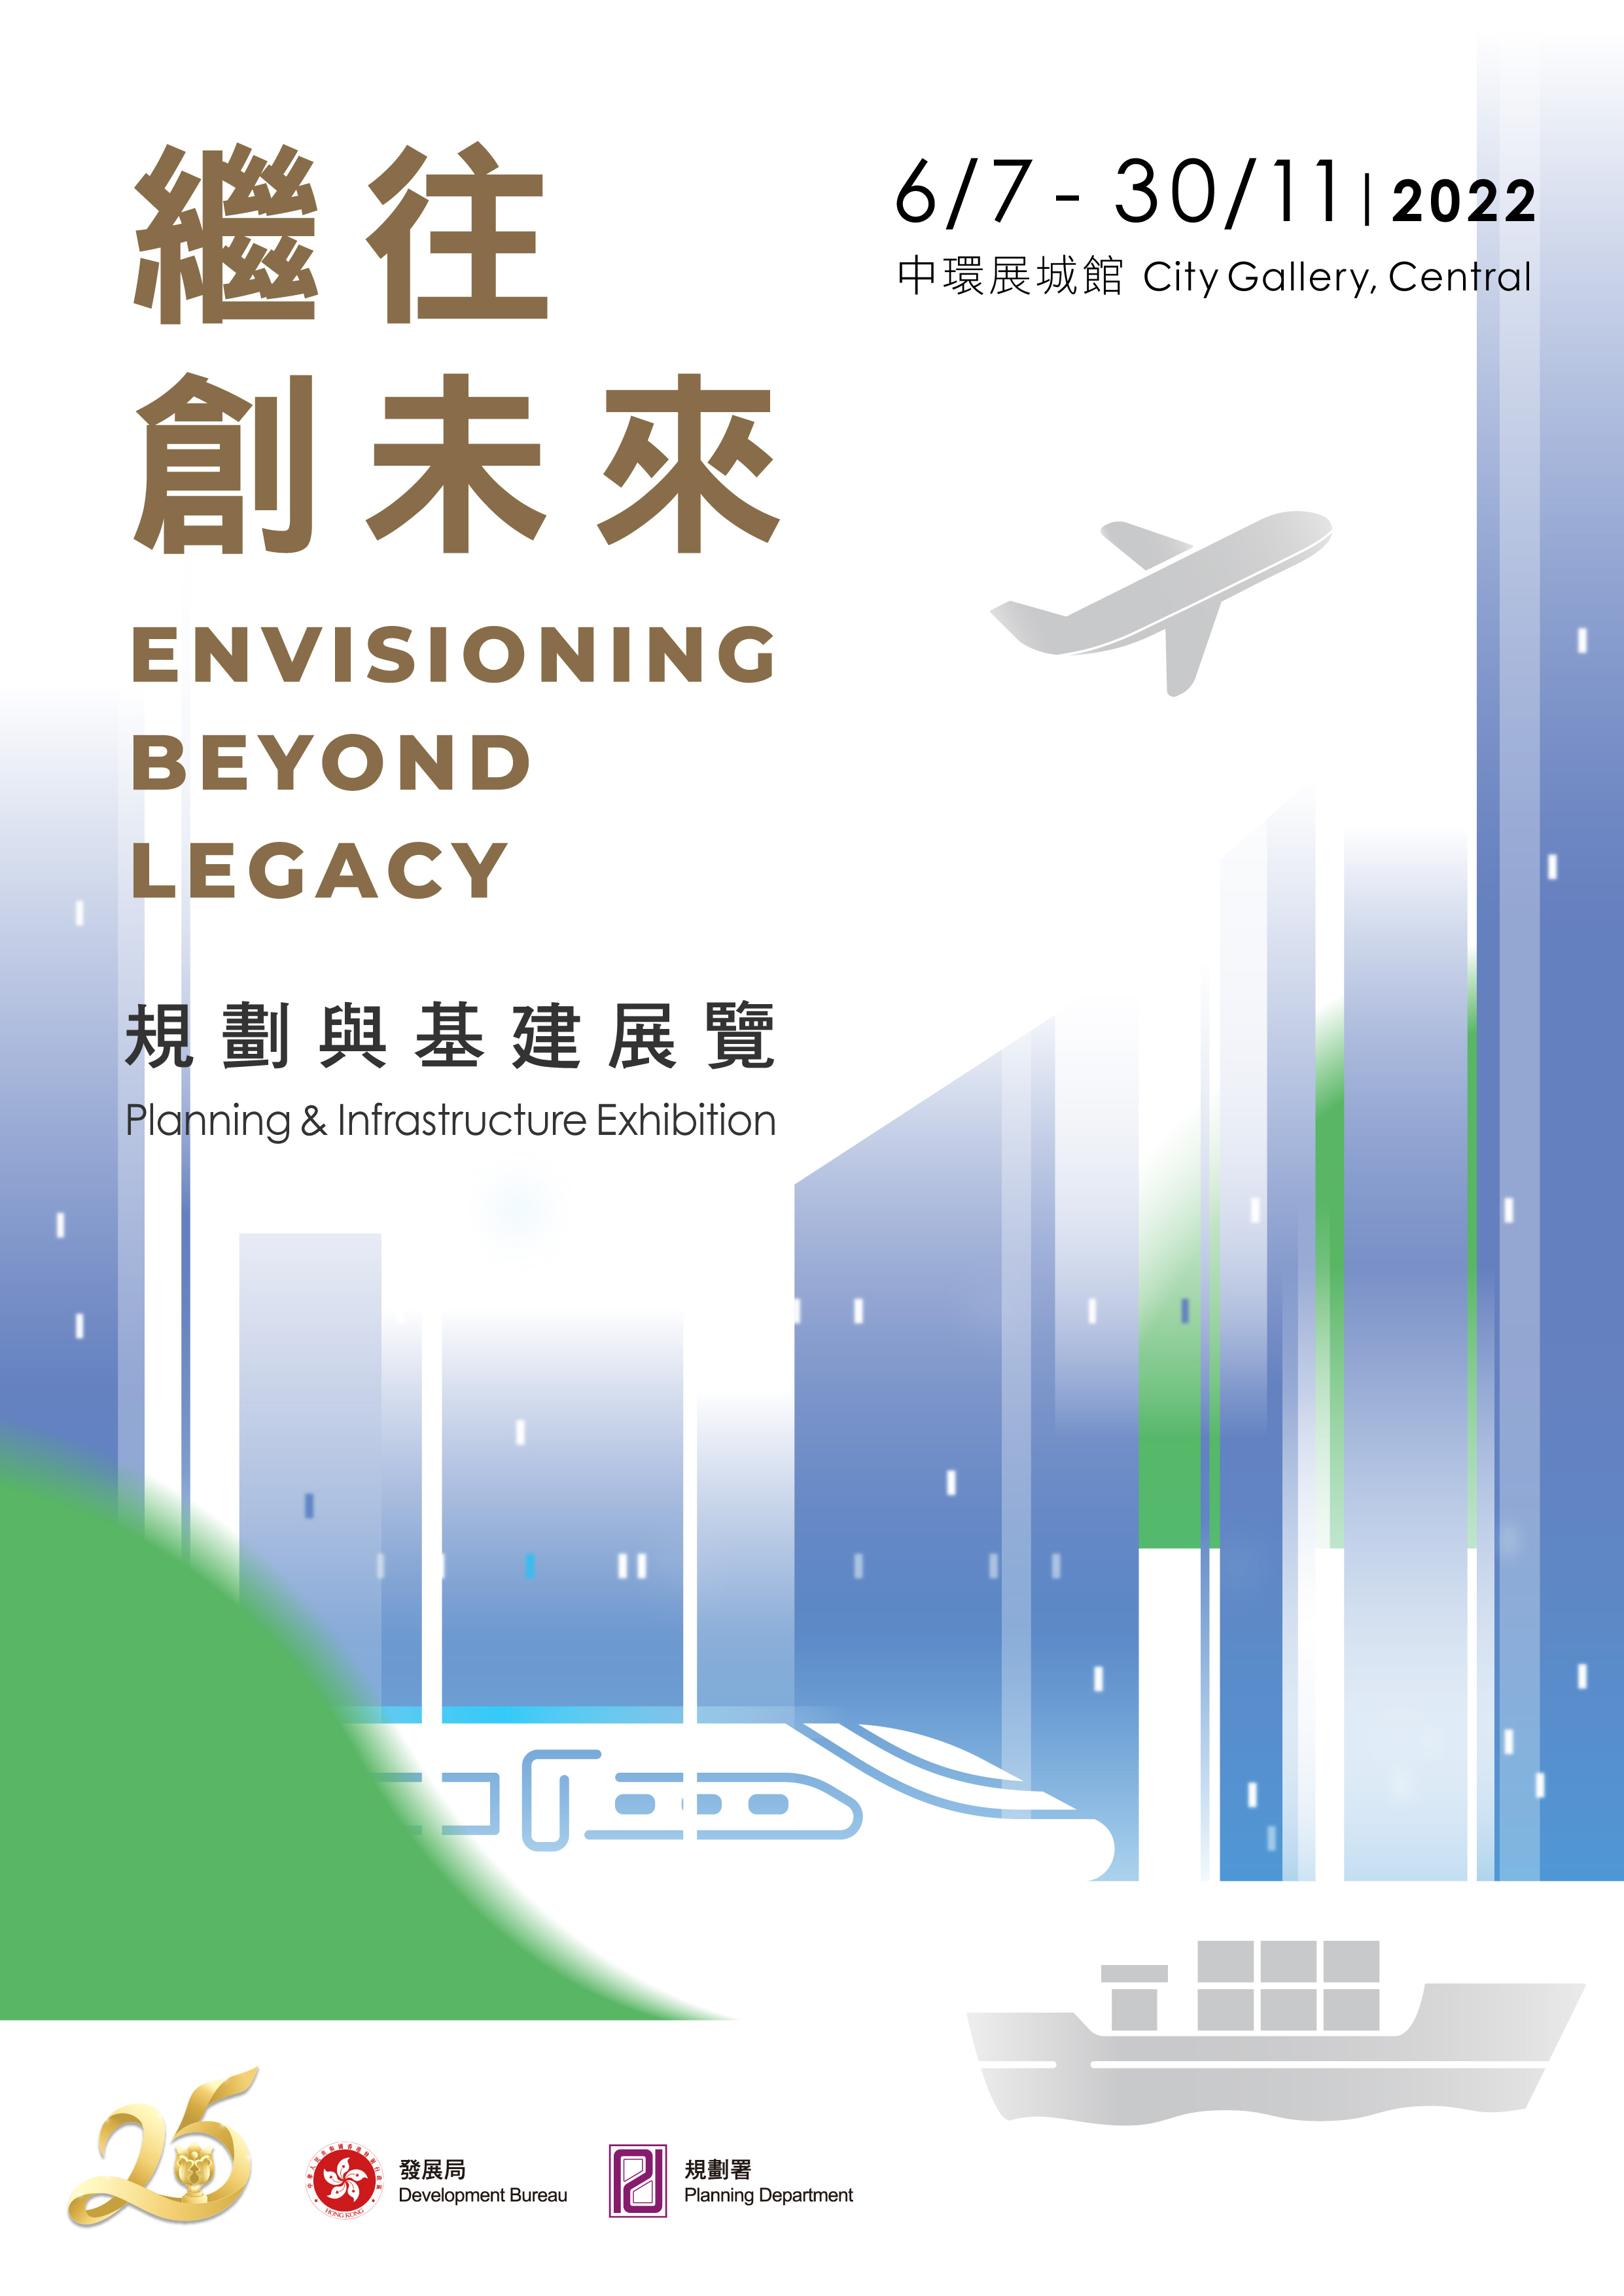 慶祝香港特別行政區成立二十五周年大型展覽 -「繼往創未來」